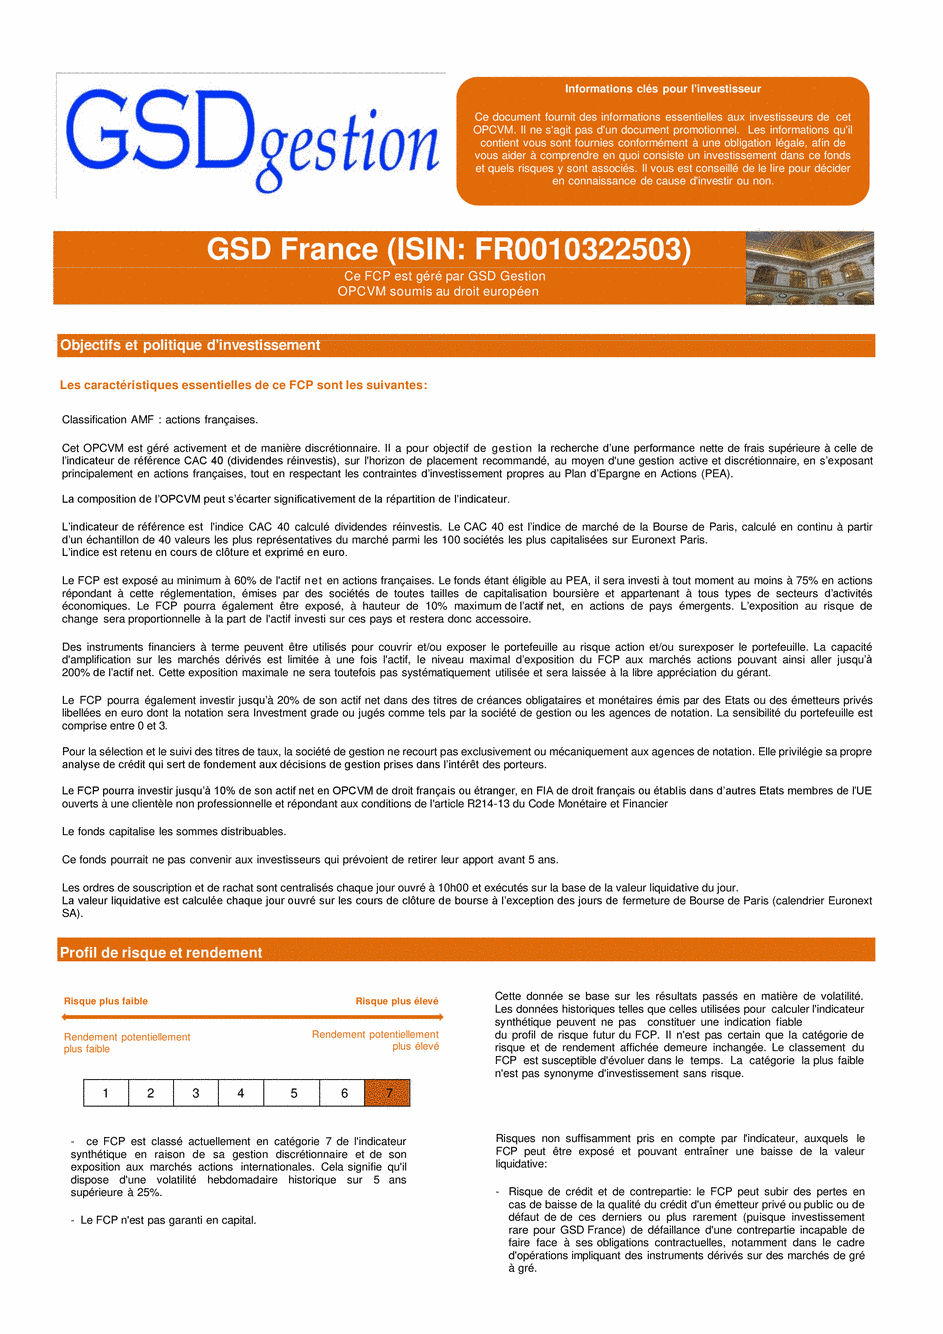 DICI-Prospectus Complet GSD France - 15/04/2021 - Français